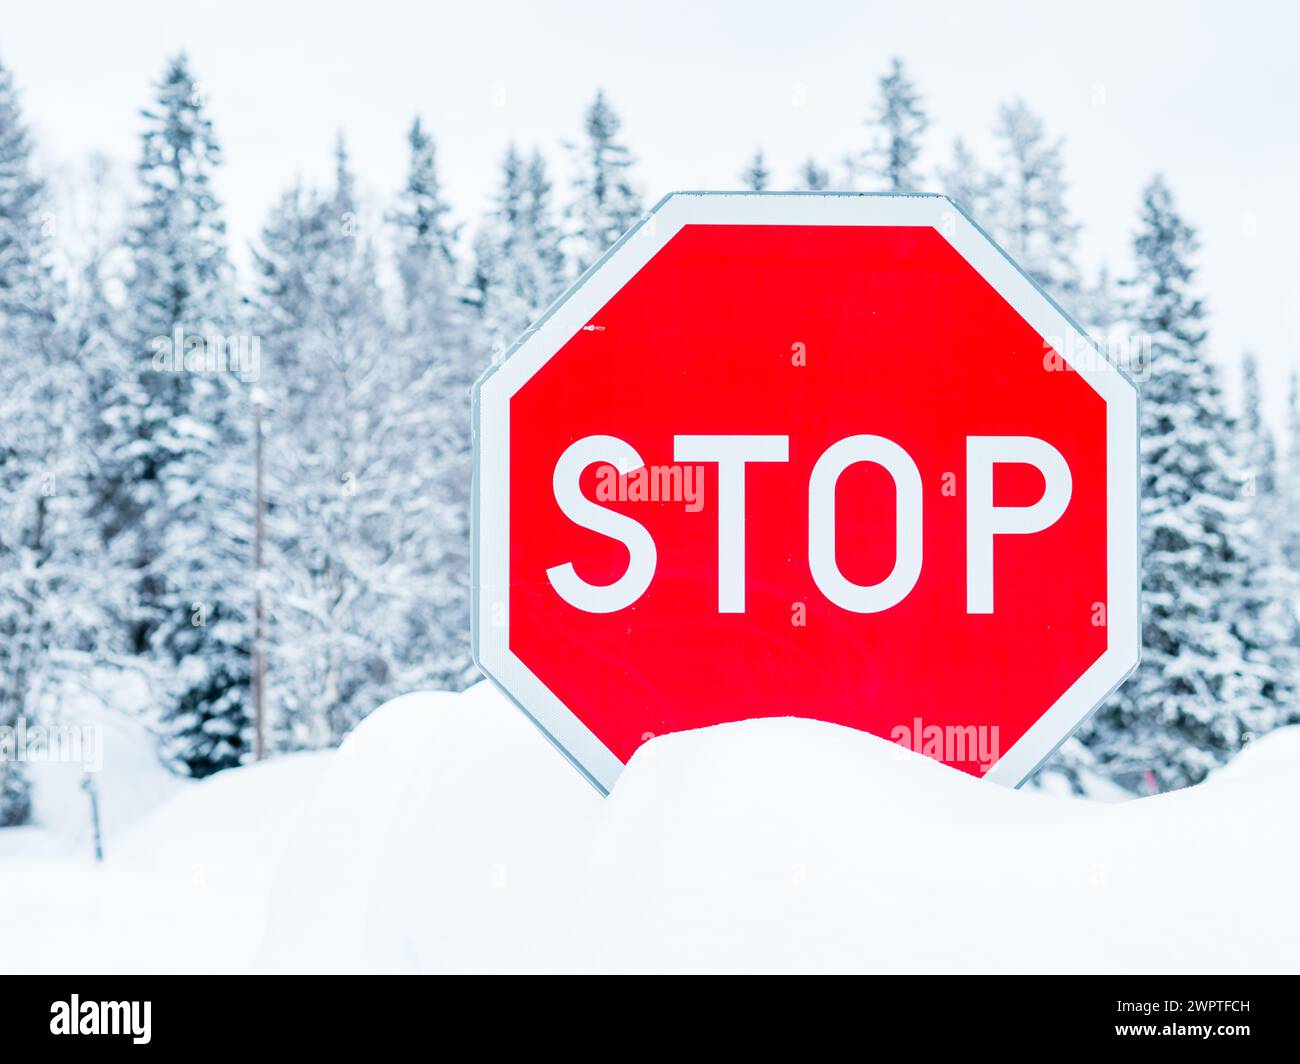 Un segnale di stop rosso si distingue contro il terreno bianco ricoperto di neve sottostante, creando un forte contrasto. Il paesaggio invernale esalta ulteriormente le visi Foto Stock